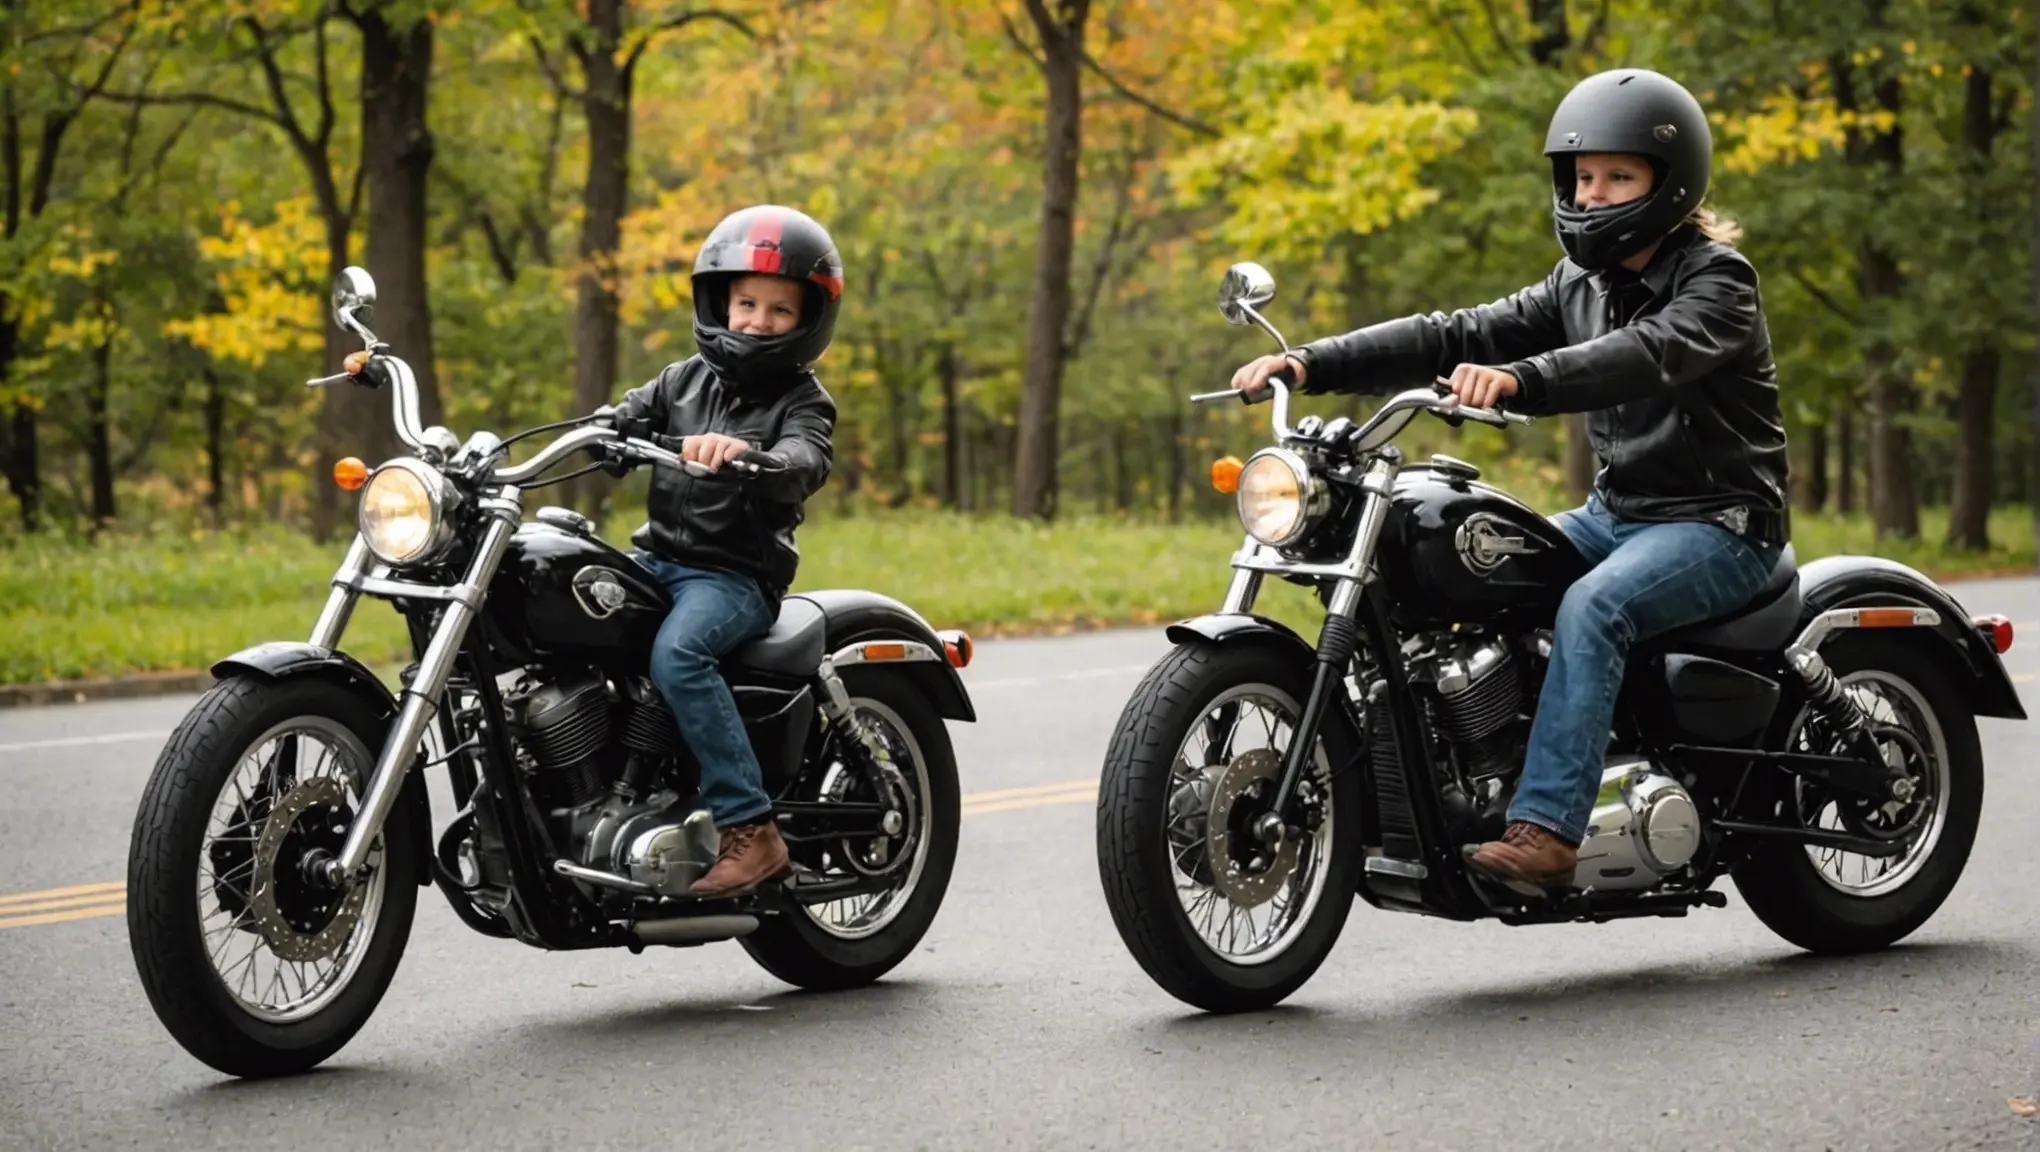 Descubra AGORA a Idade Mínima para Pilotar Moto e Surpreenda-se!